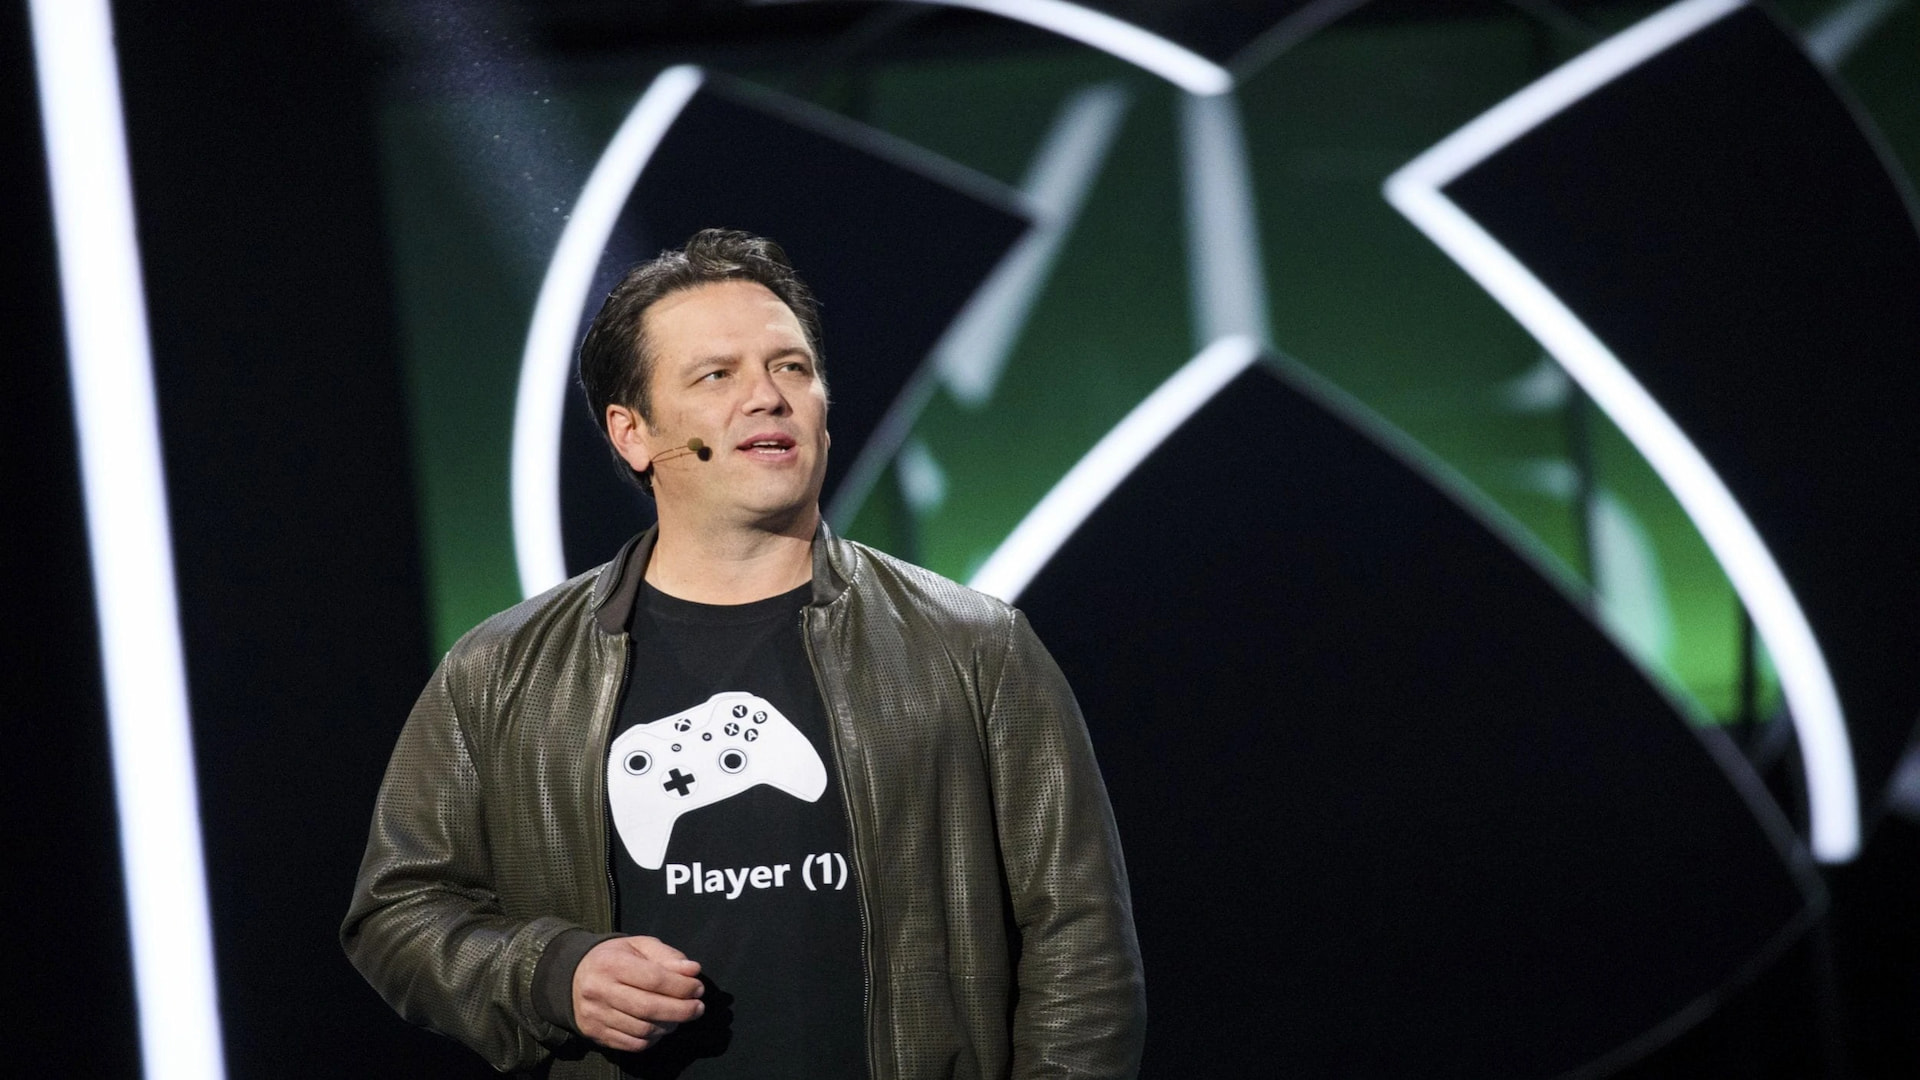 Xbox el konsolu gerçek mi oluyor? CEO'dan açıklama geldi